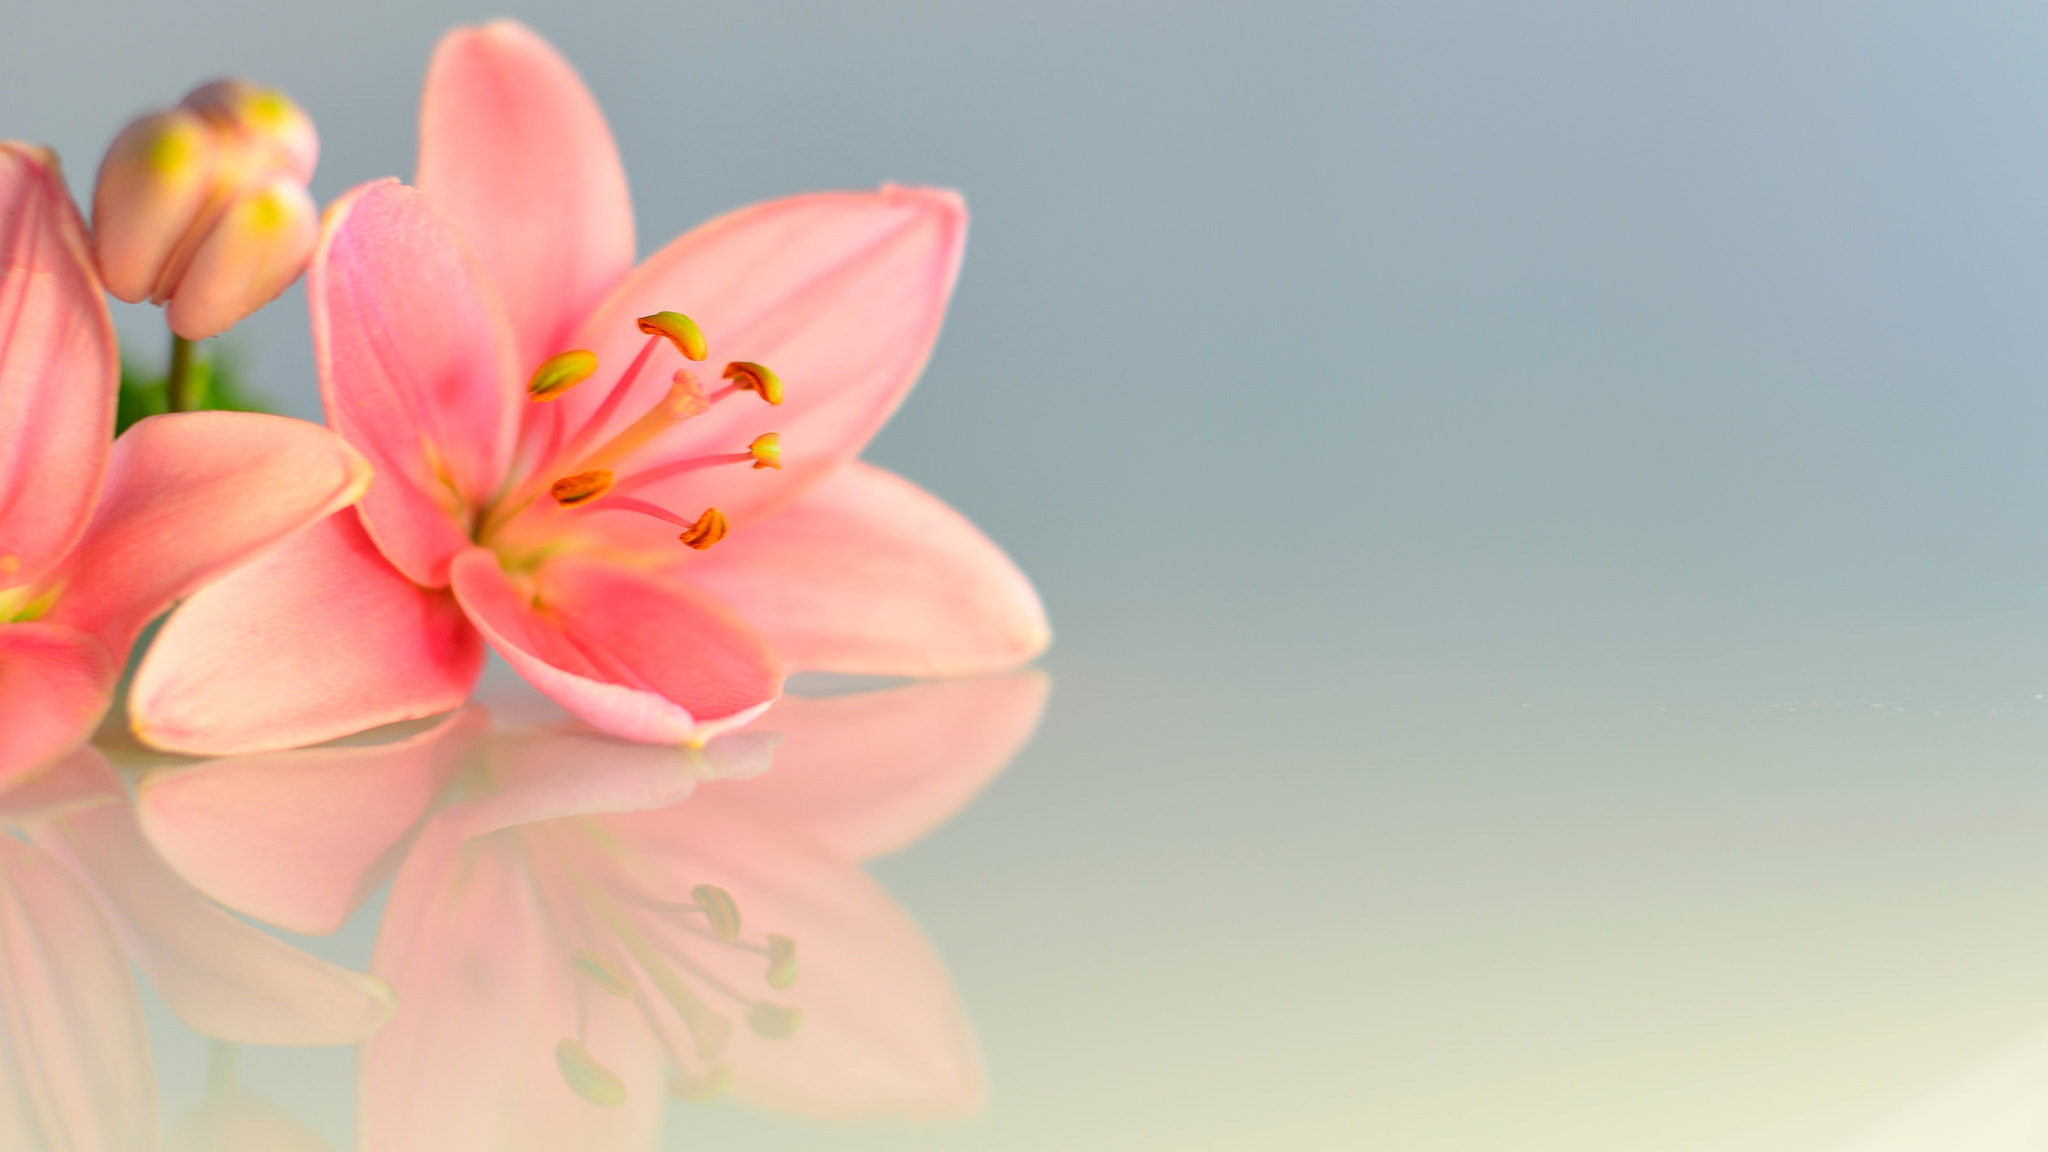 Nikon D600 sample photo. Beautiful lilies photography